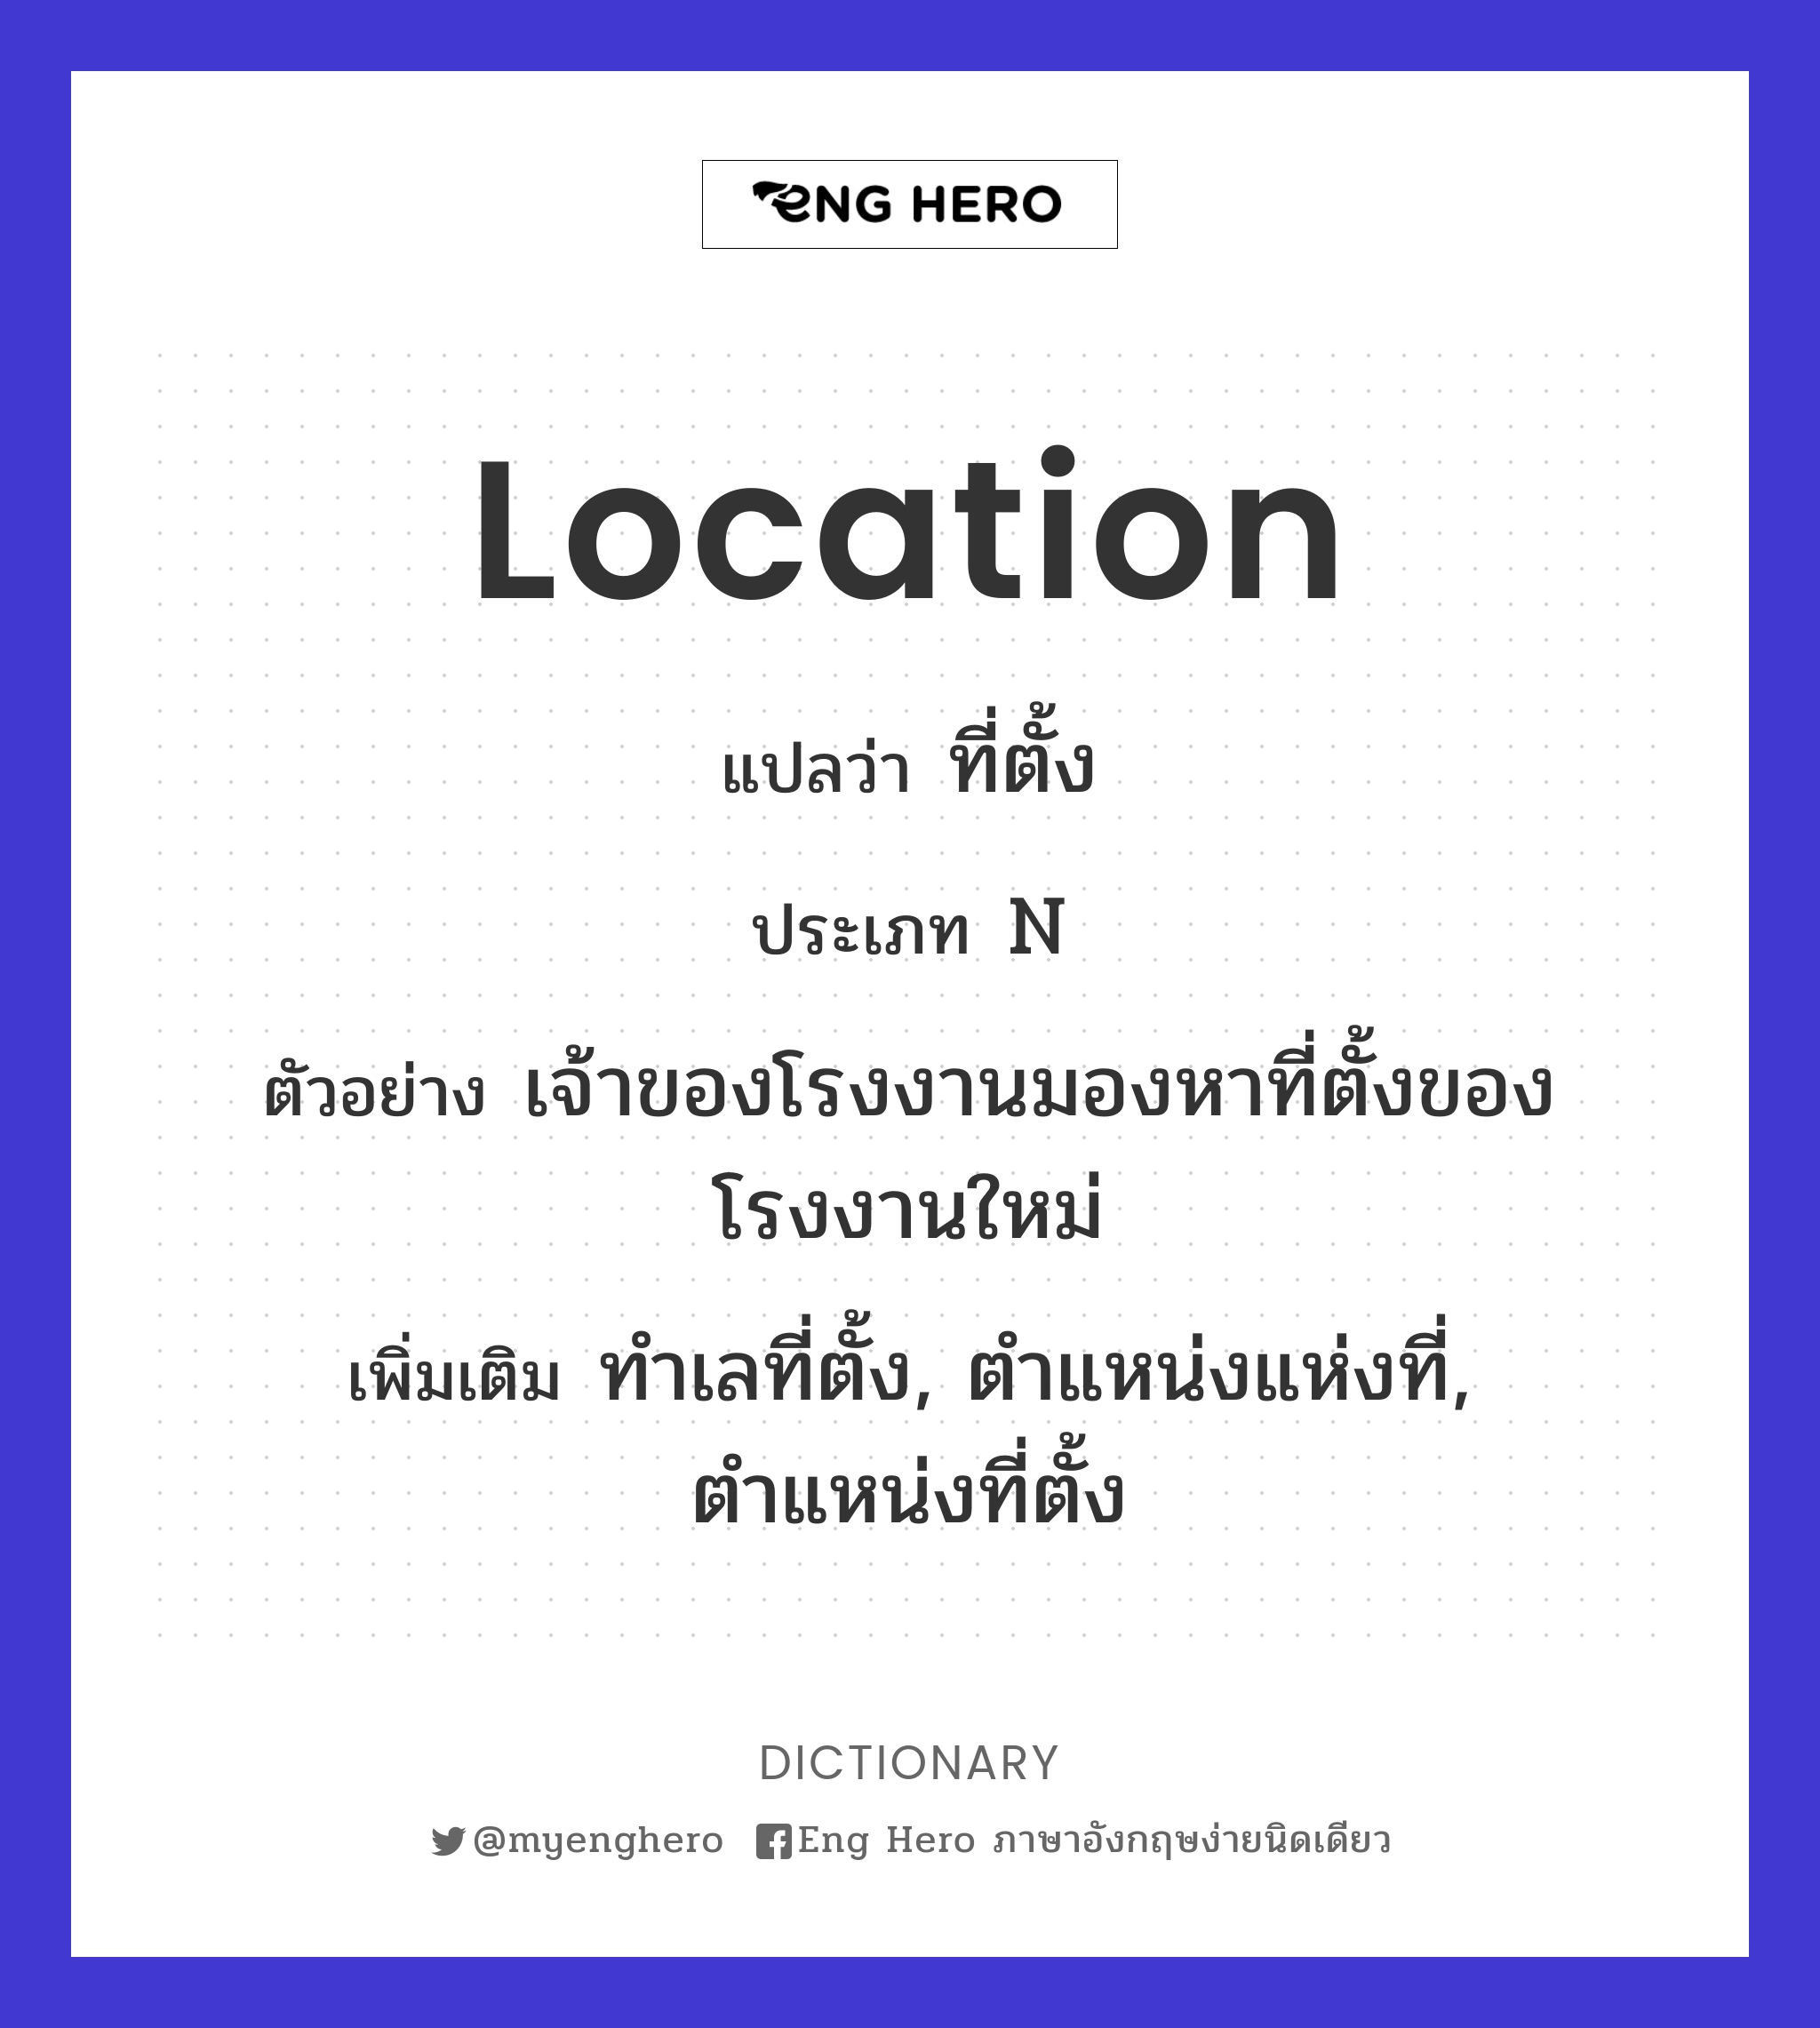 location